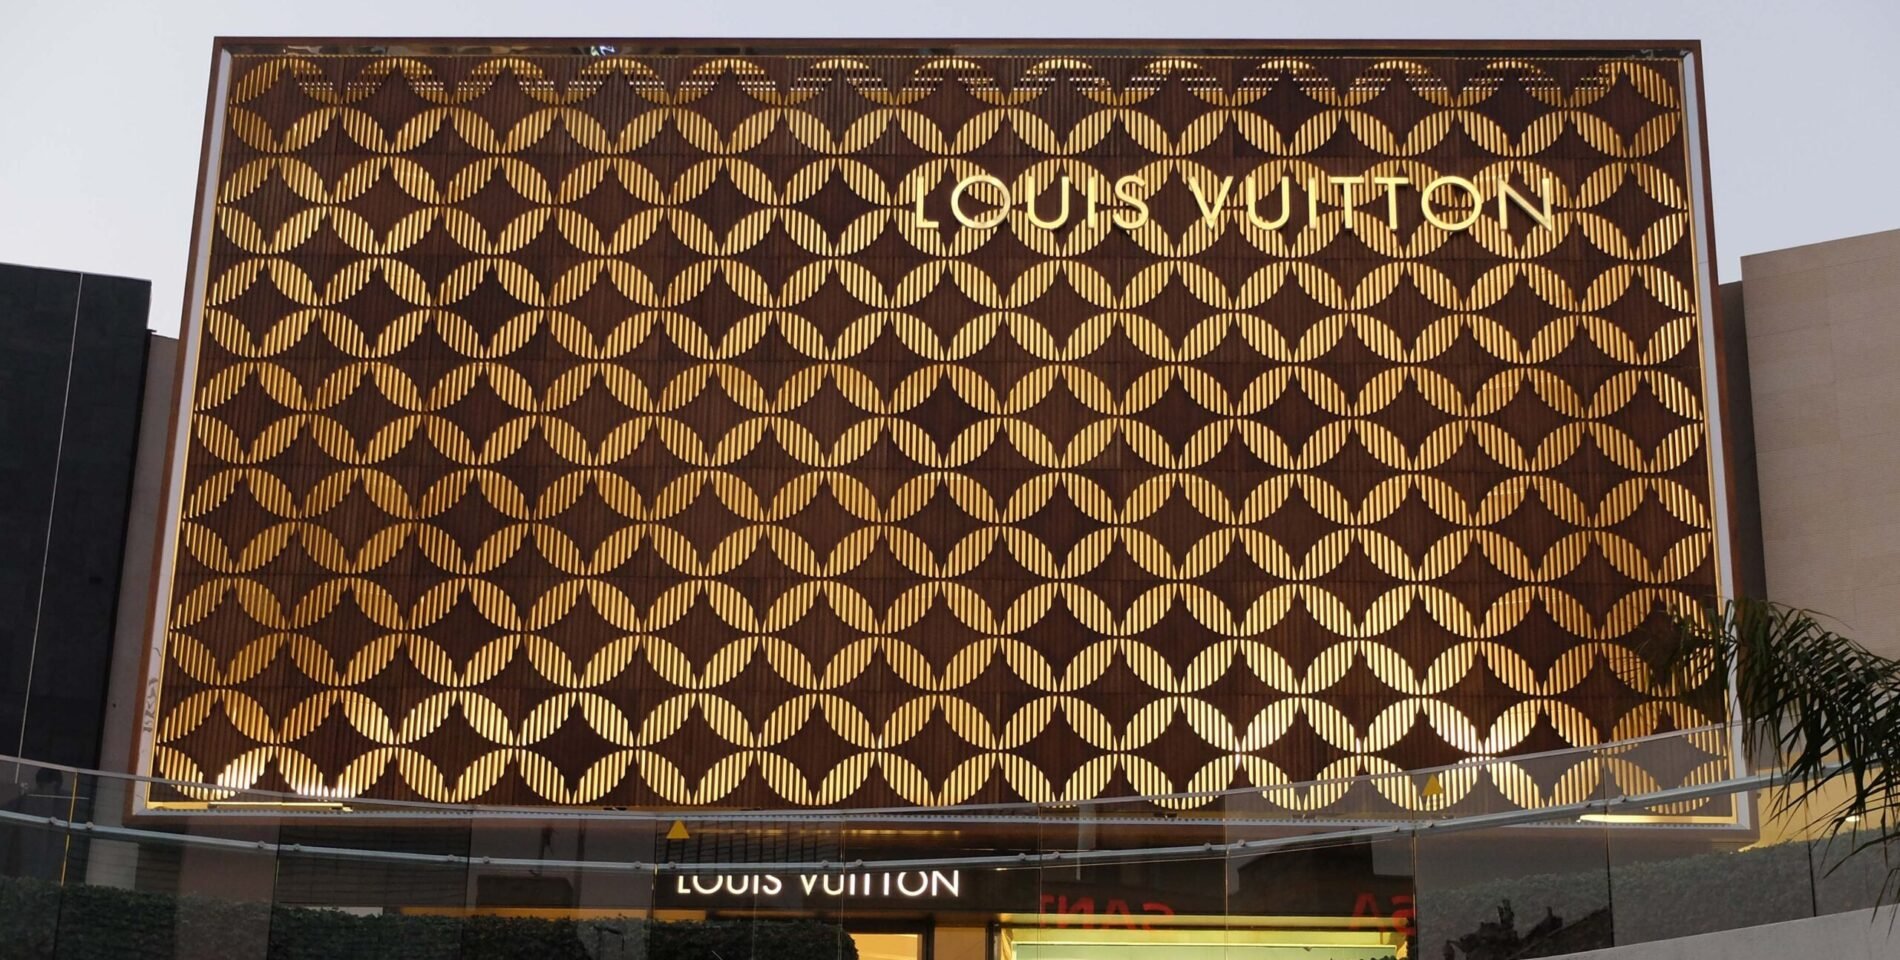 Louis Vuitton Masaryk (previous)